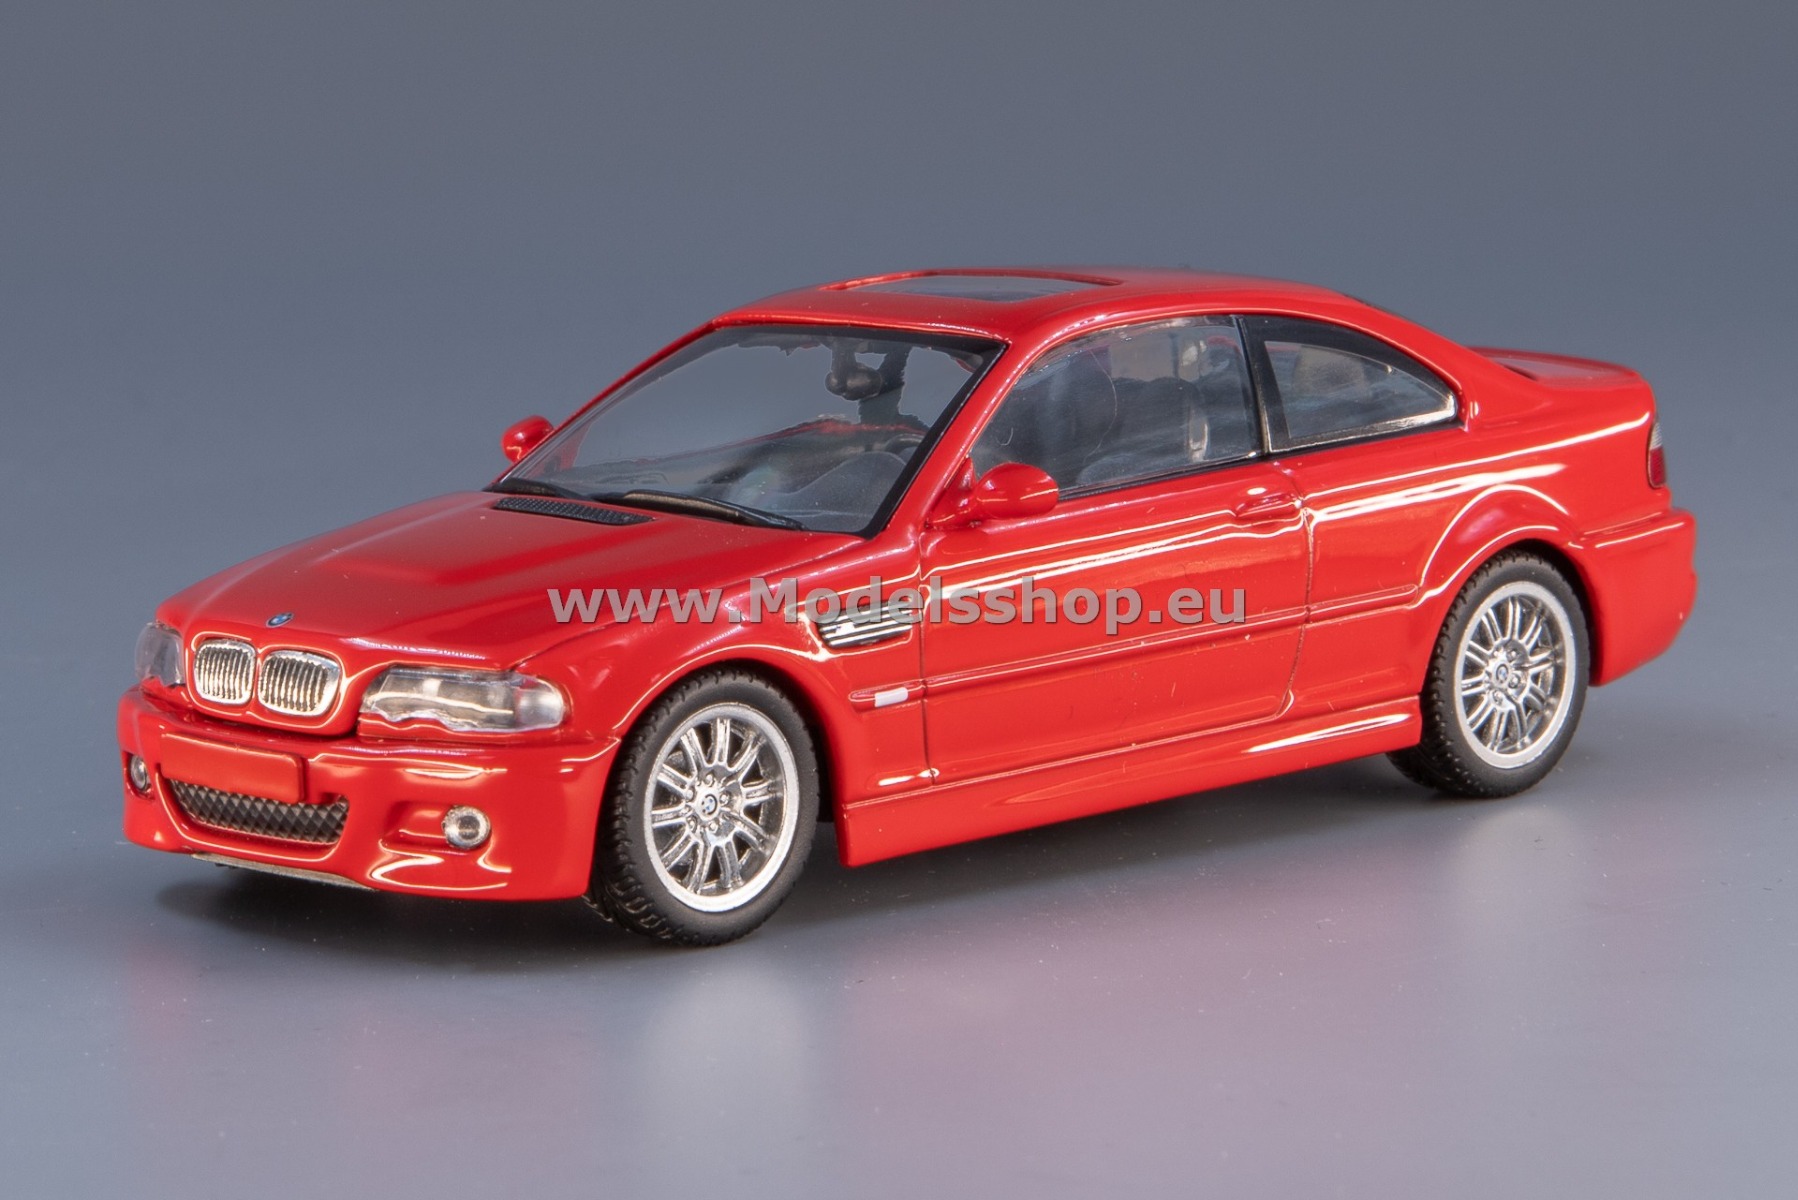 Maxichamps 940020020 BMW M3 (E46) Coupe, 2001 /red/